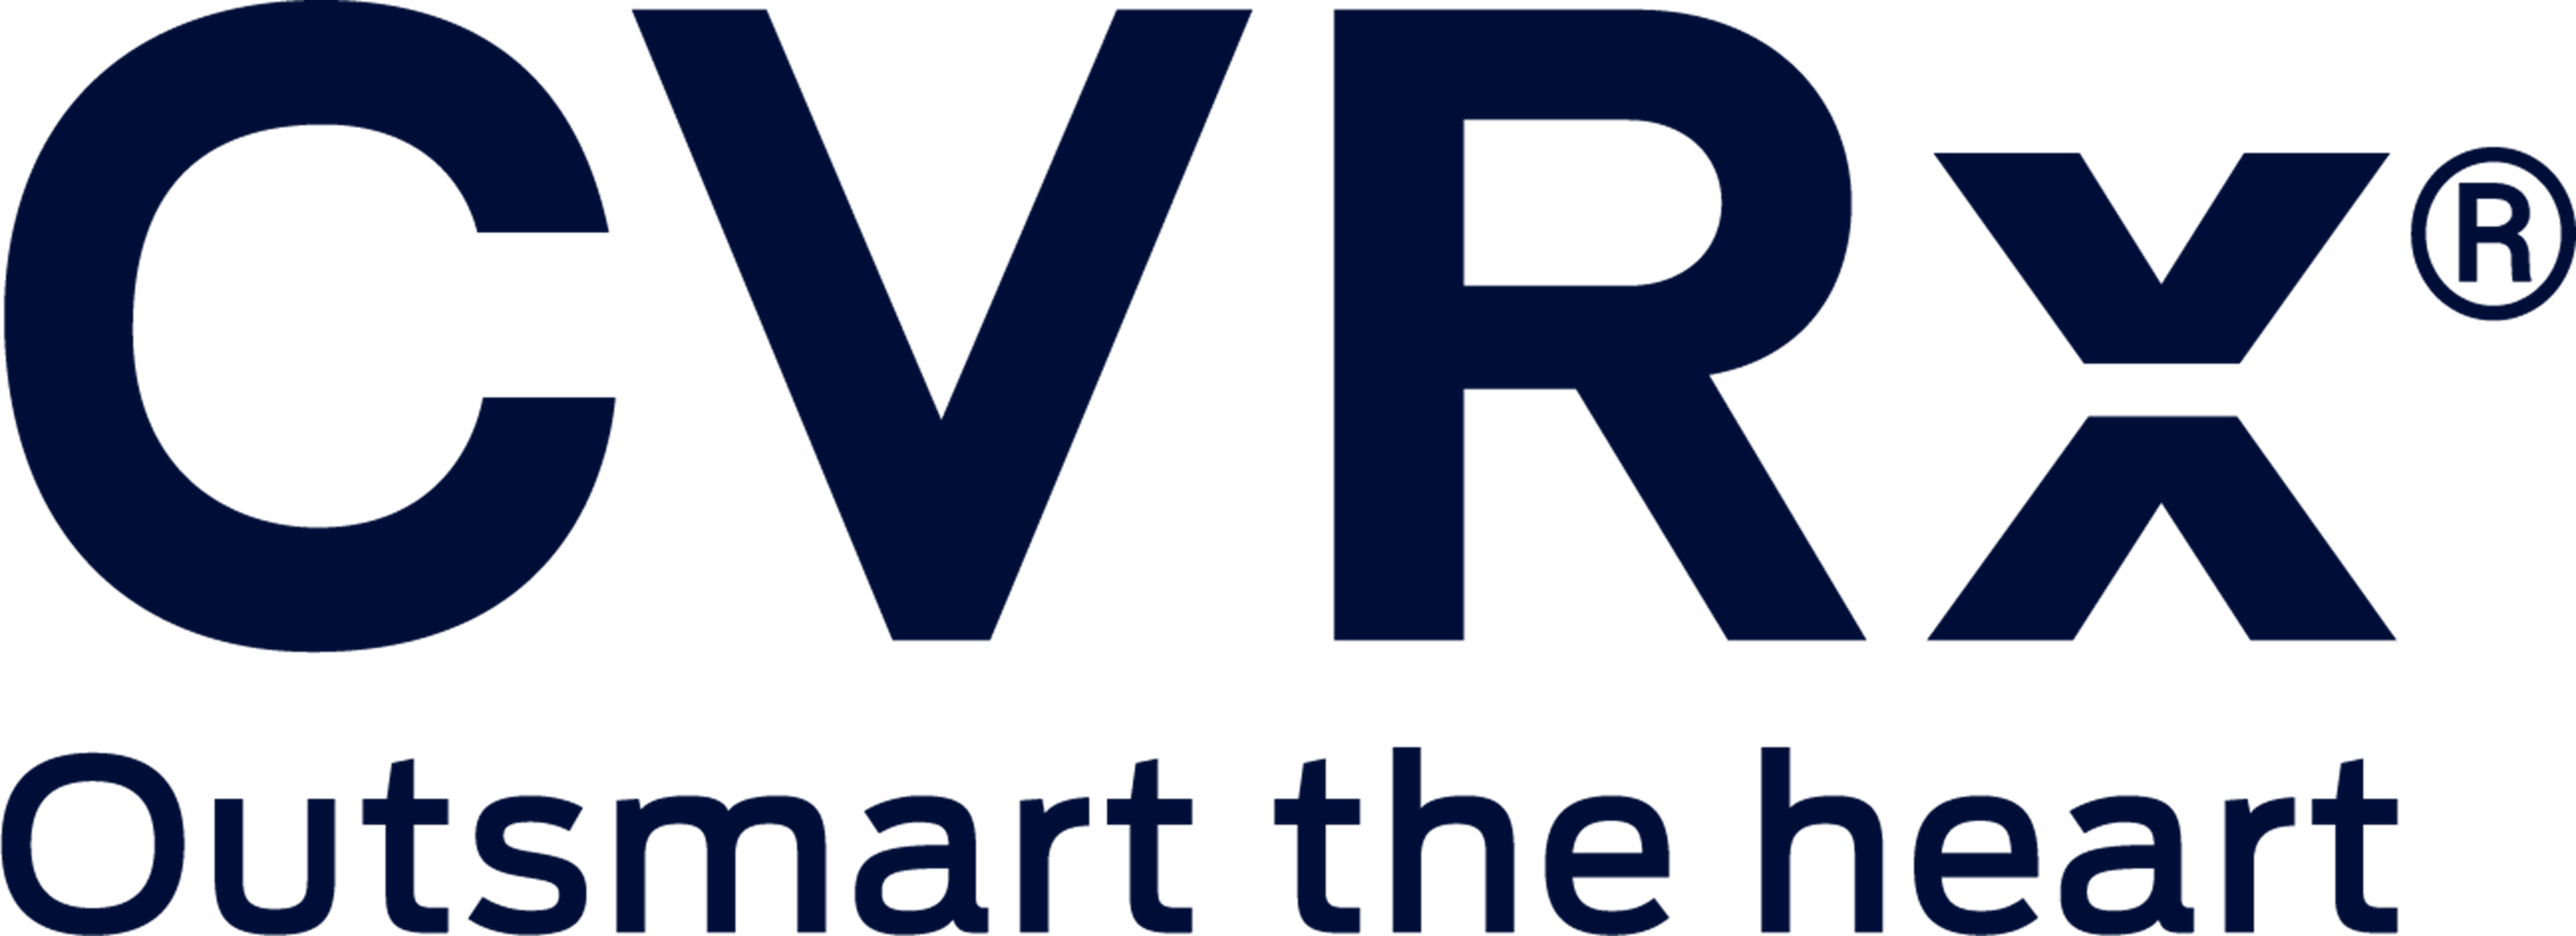 CVRx logo